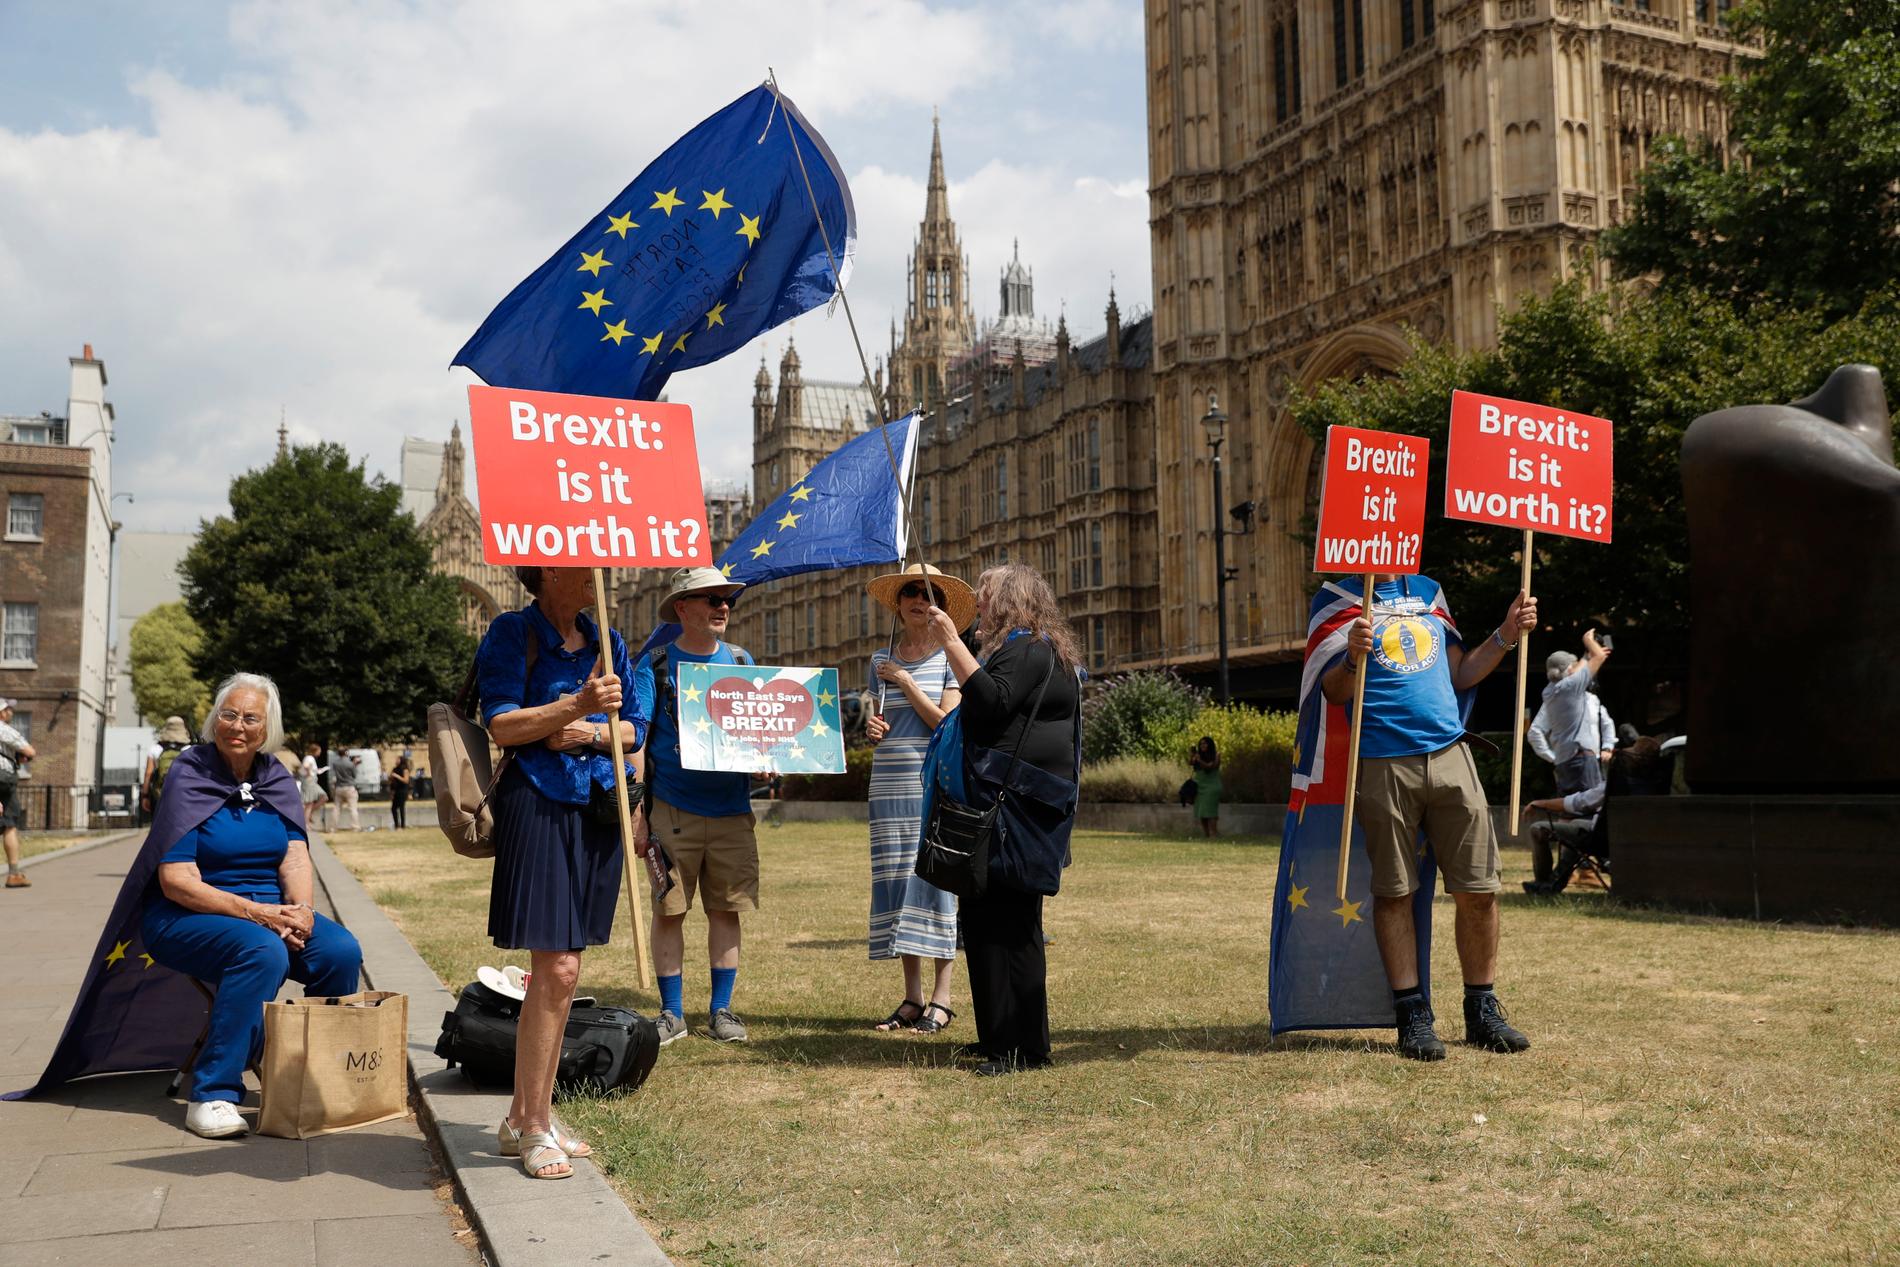 Brexitförkämpar demonstrerar utanför det brittiska parlamentet i London, där måndagens debatt om Storbritanniens tullarrangemang efter EU hålls på måndagen. Debatten och dess efterföljande omröstning riskerar att bli en skräckupplevelse för Mays och hennes anhängare. Bilden är från 9 juli.